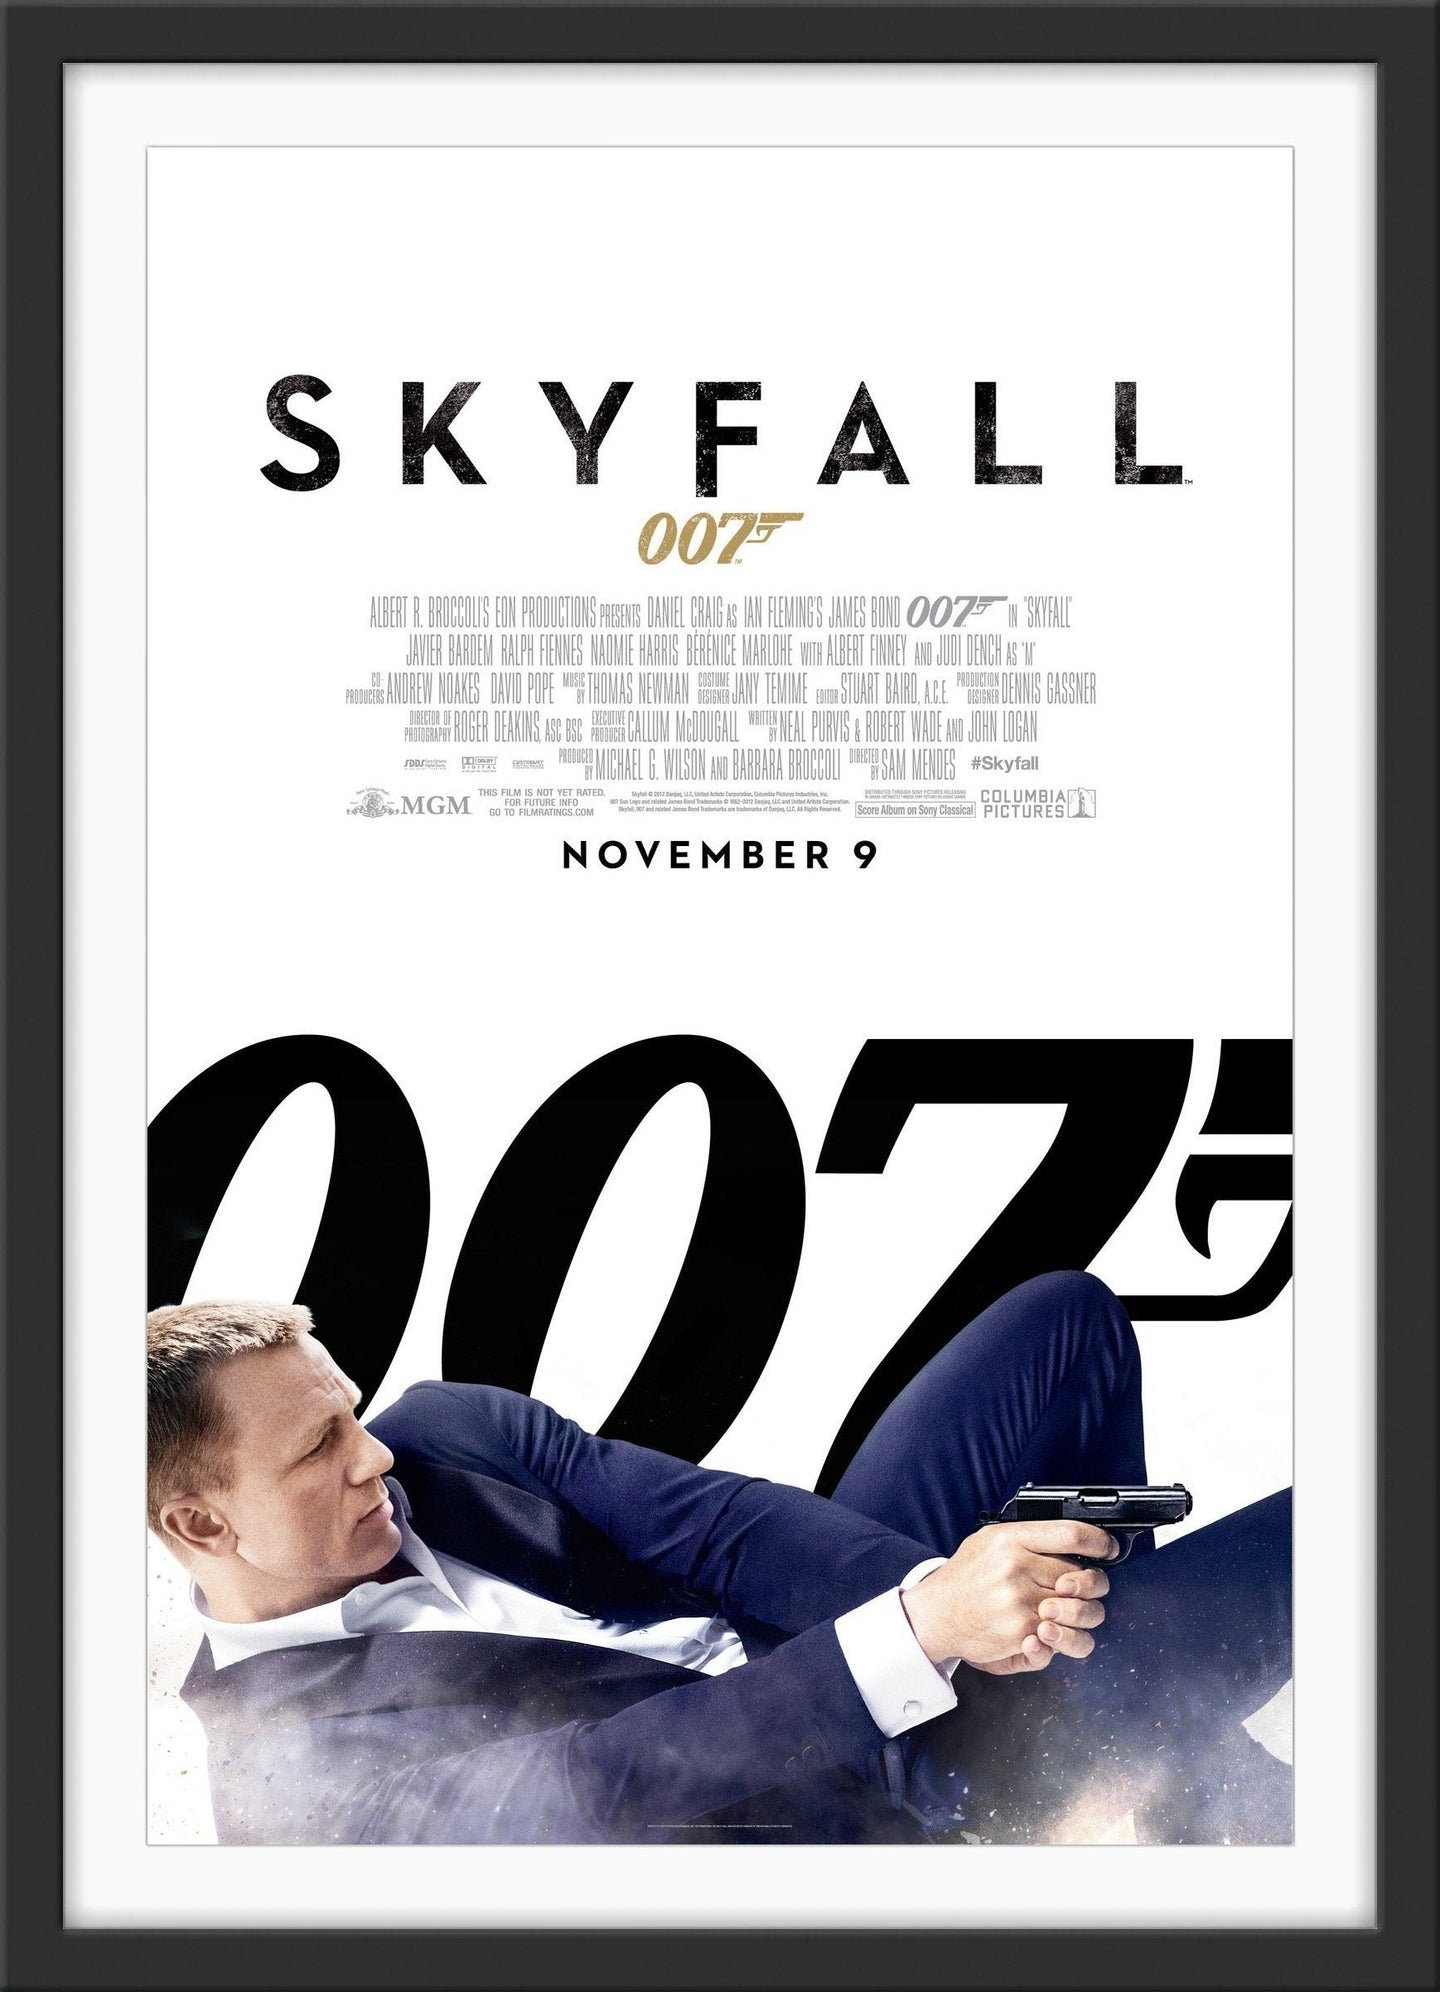 An original movie poster for the James Bond film Skyfall